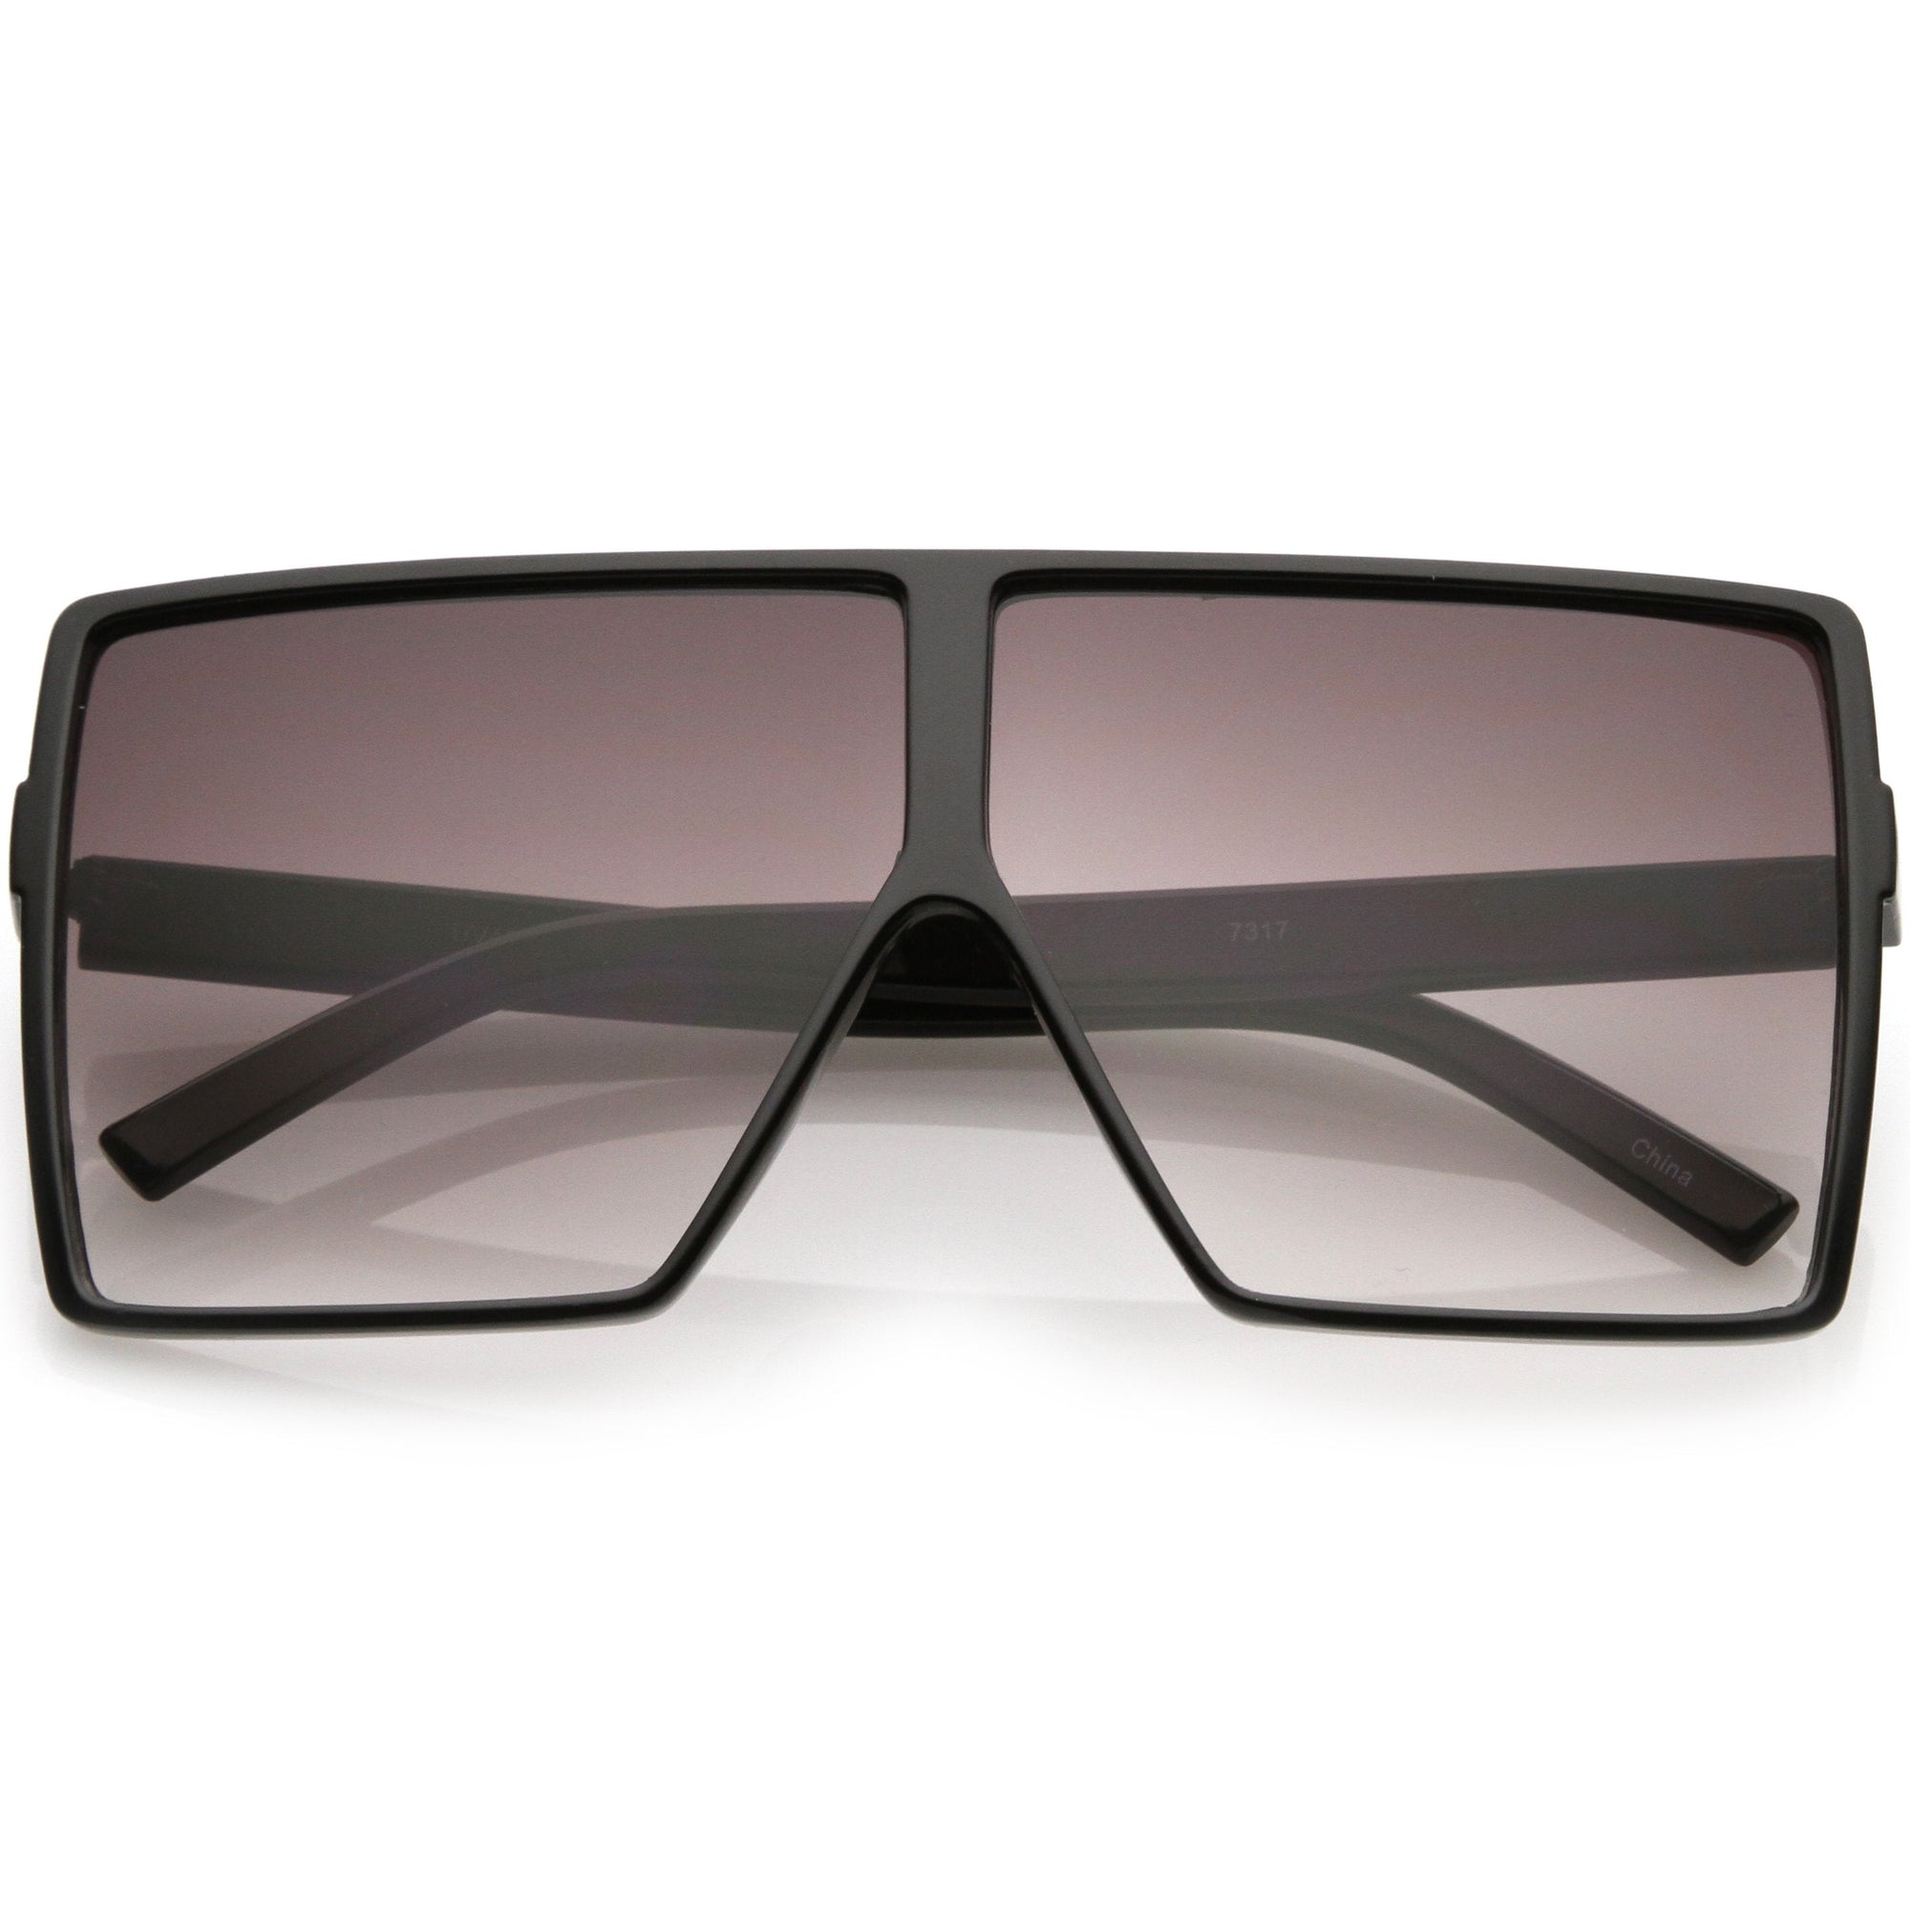 SIMPLE Classic Retro Fashion Mirrored Sunglasses for Men - Blue -  C718ZEQ2TL3